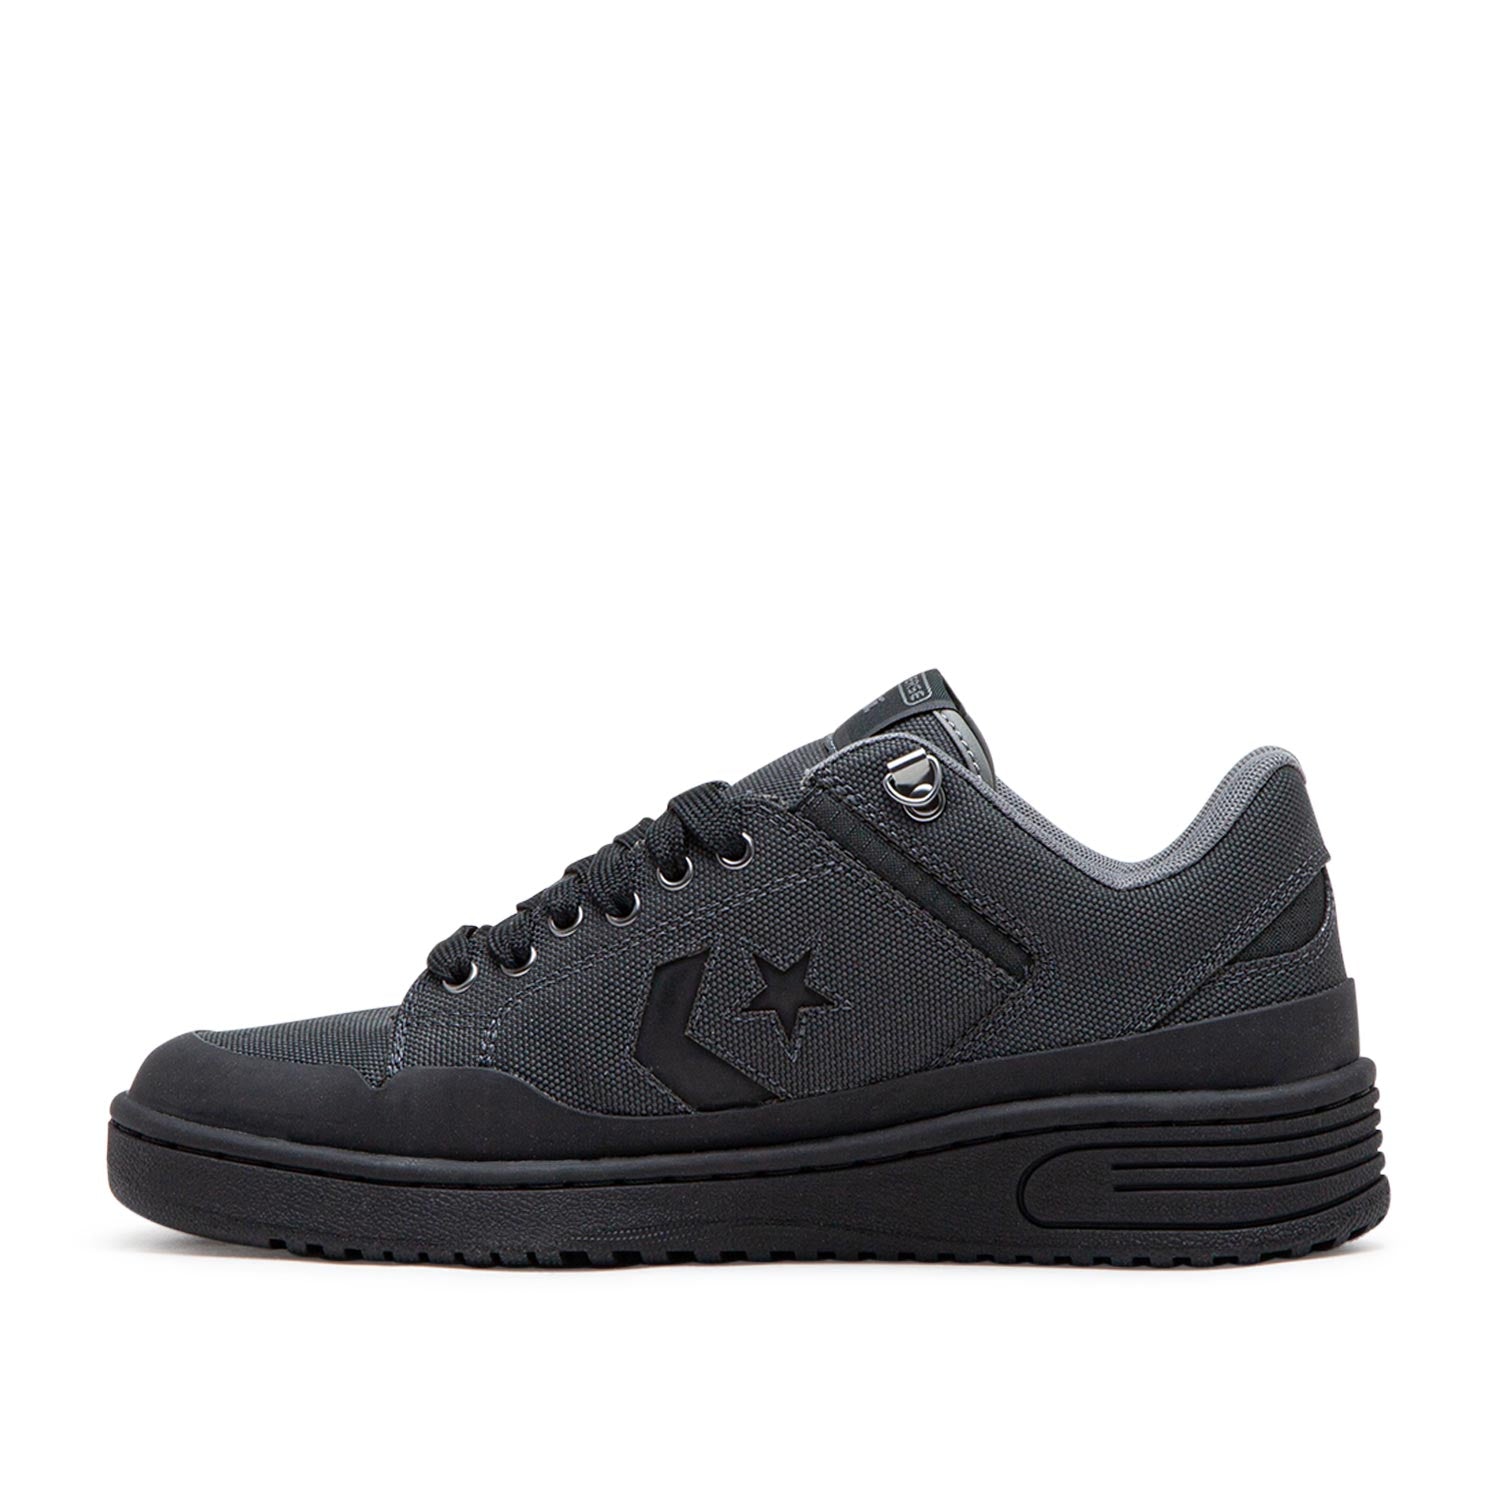 Converse x Patta Rain or Shine Weapon (Schwarz)  - Cheap Sneakersbe Jordan Outlet